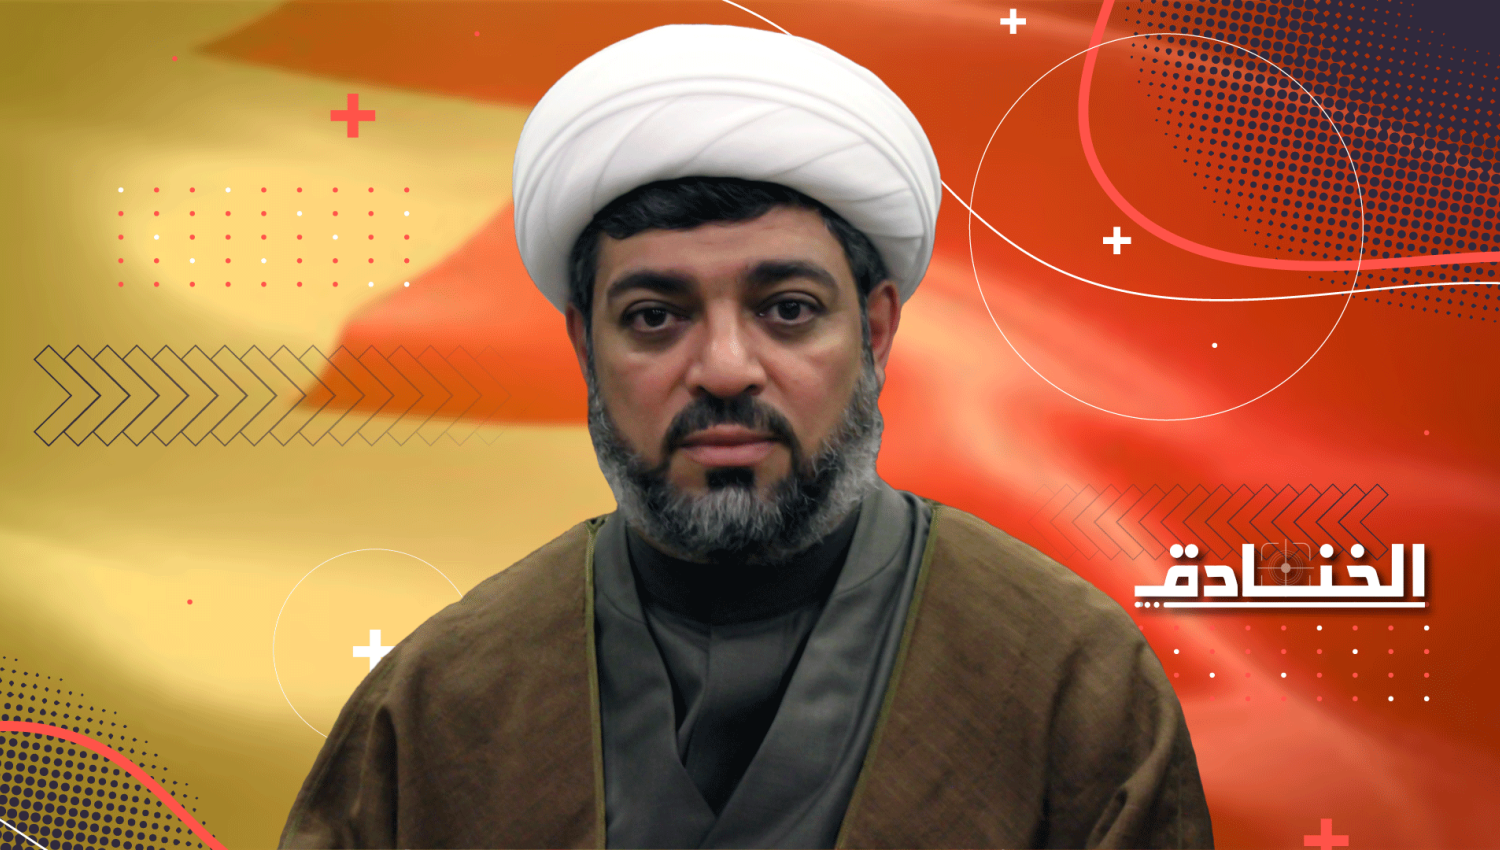 الشيخ حسين الديهي: نائب الأمين العام لجمعية الوفاق الوطني الإسلامية